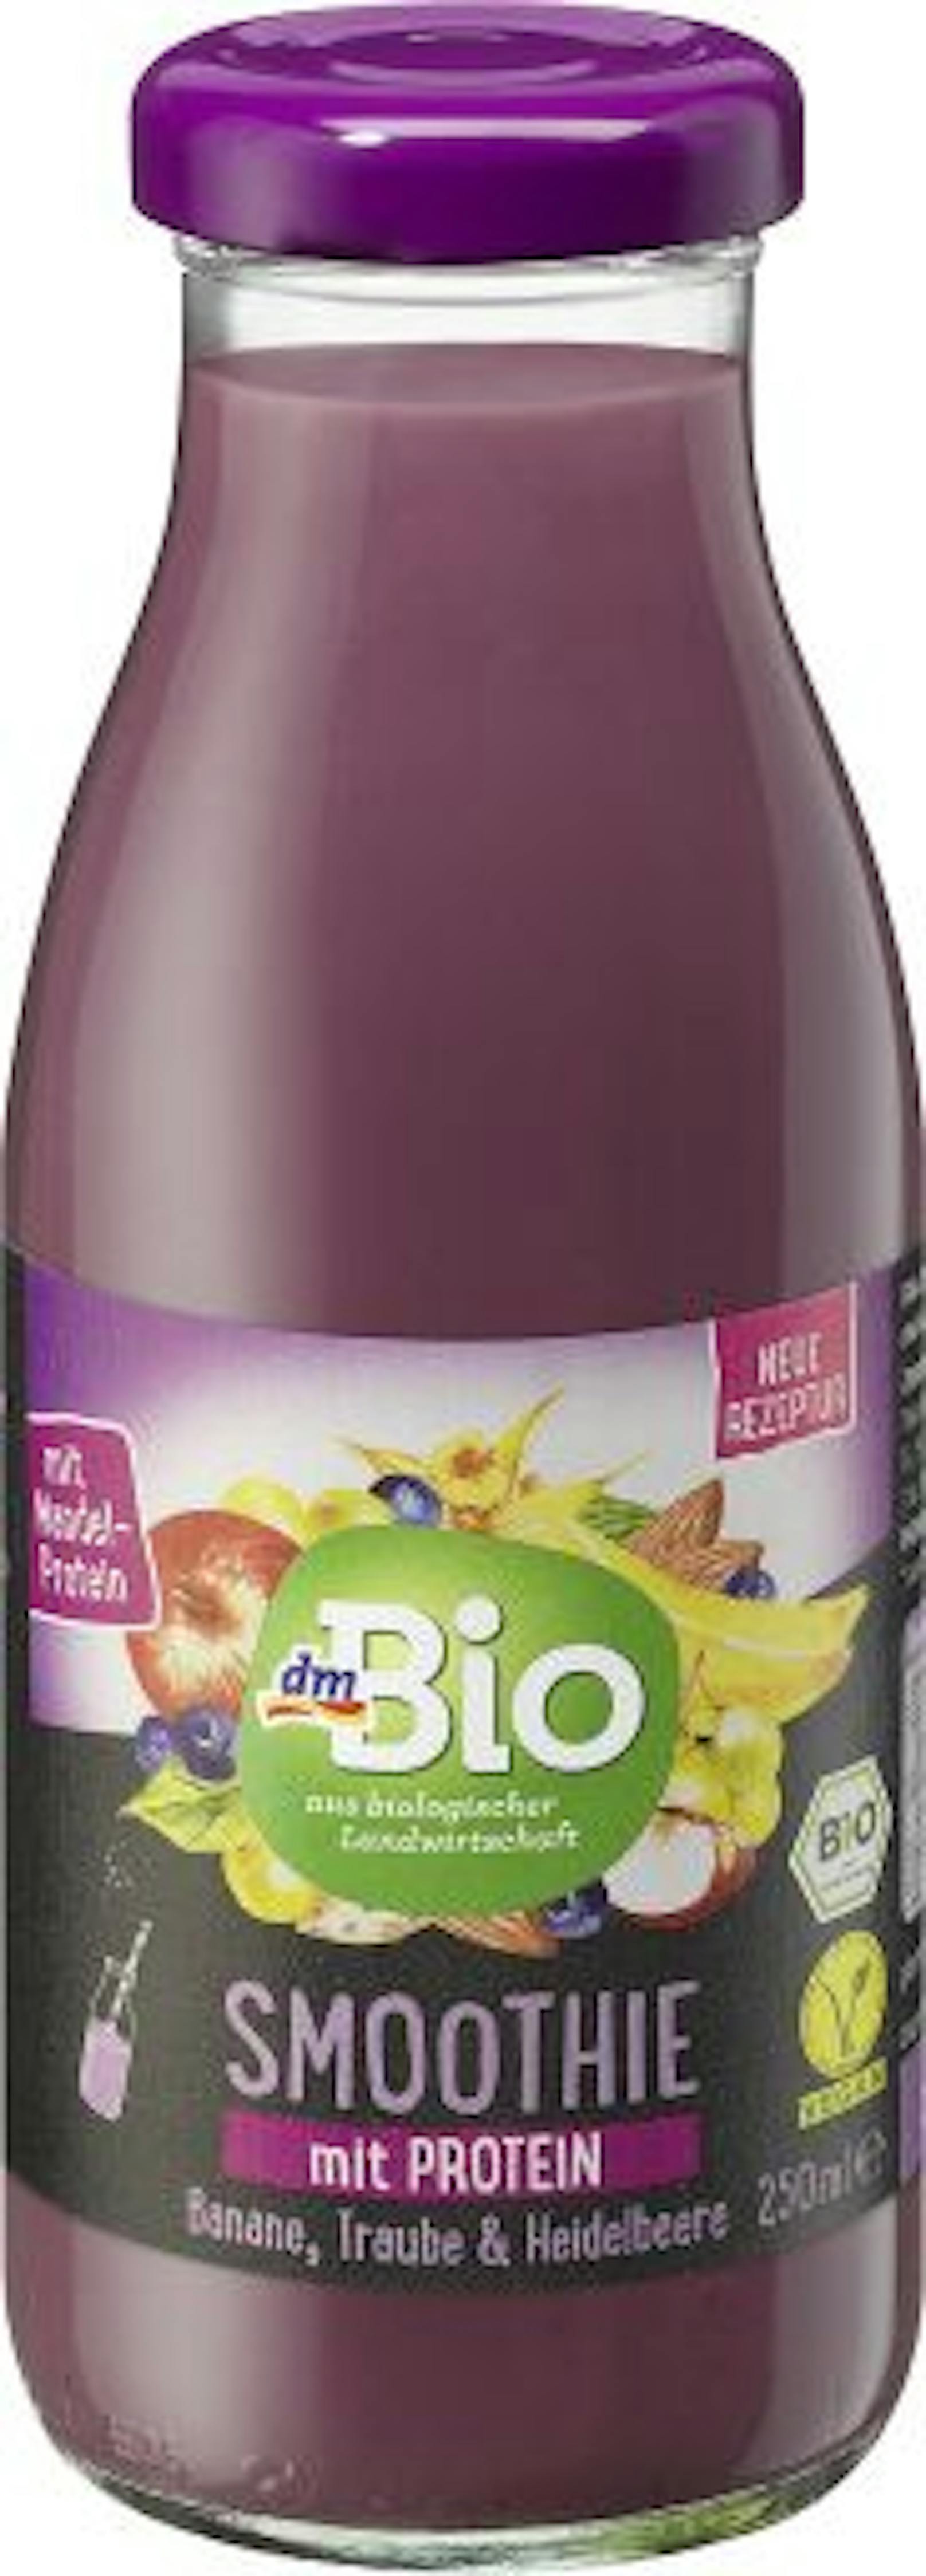 dmBio Smoothie mit Protein, 250 ml